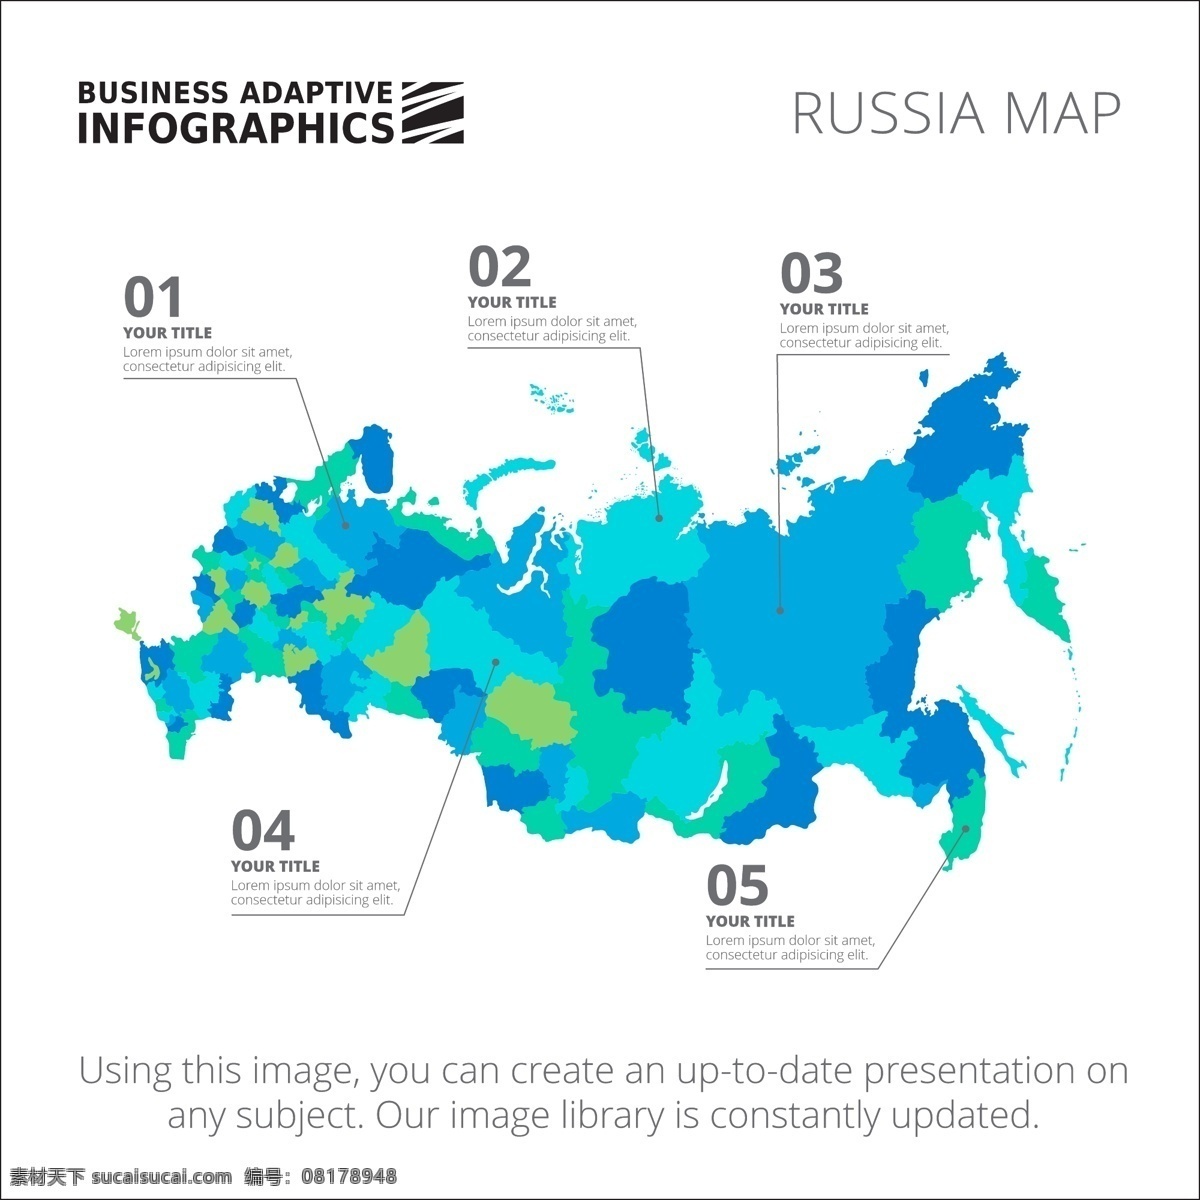 图表模板设计 图表 业务 地图 图形 模板 数字 信息 数据 要素 信息图表元素 色彩 俄罗斯 商业图表 infography 图表模板